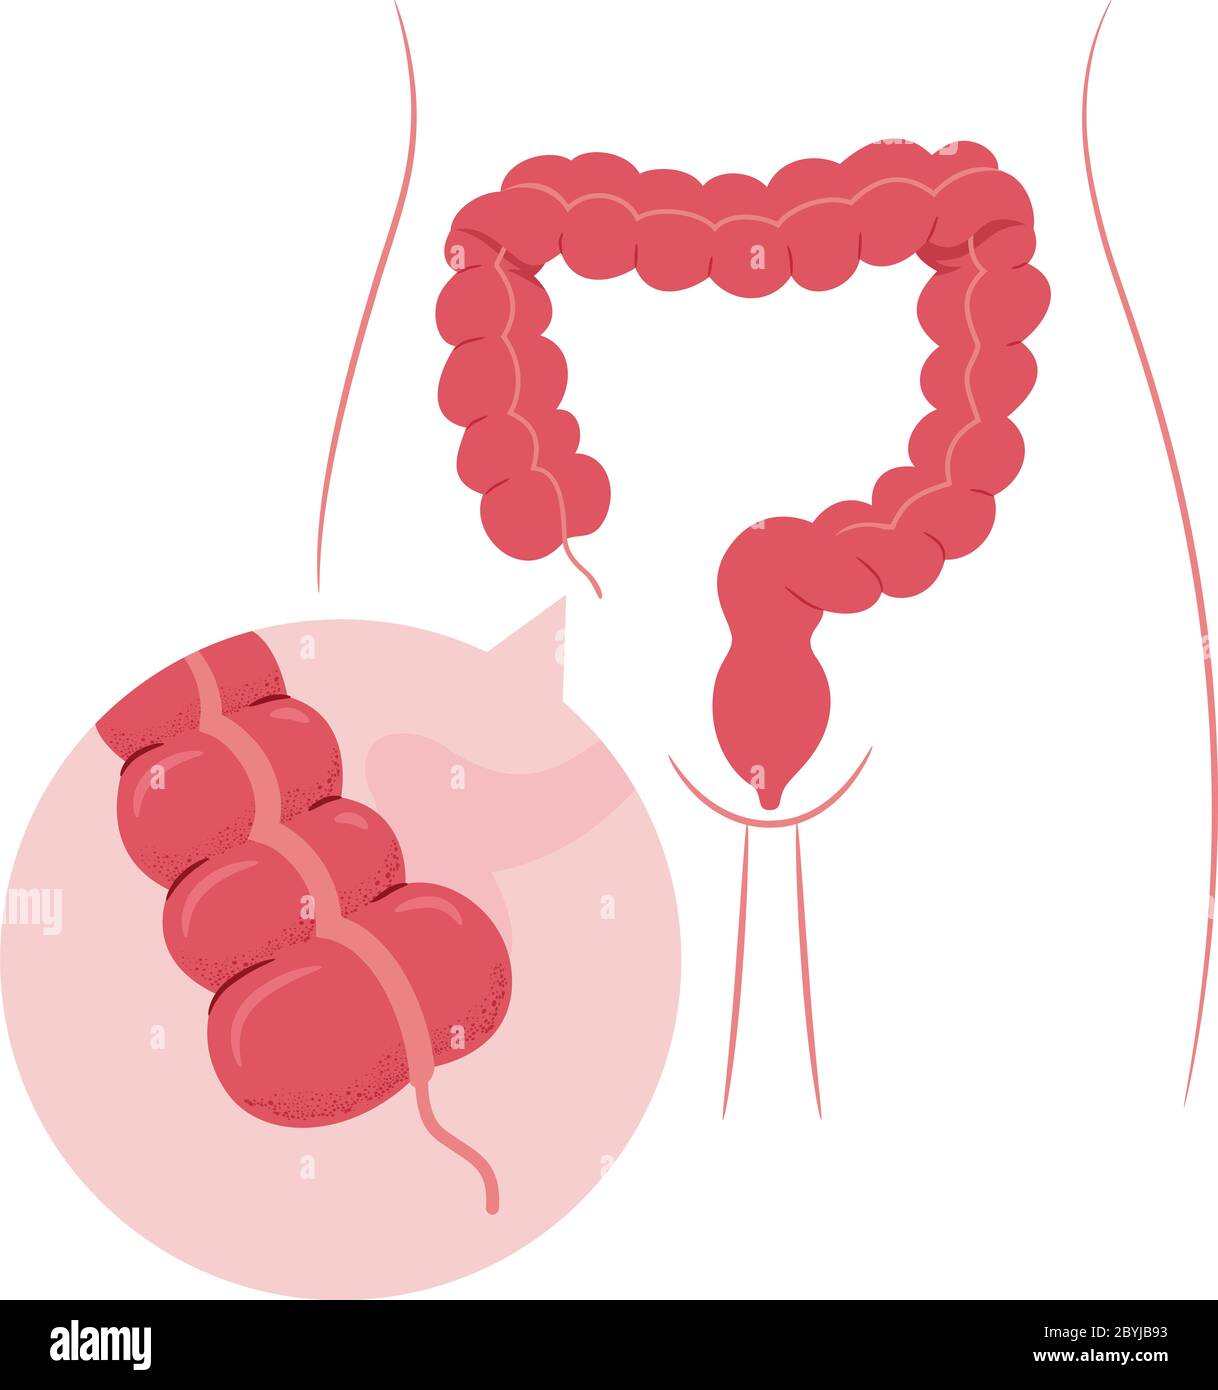 Illustrazione di un organo dell'intestino crasso con appendice ingrandita Foto Stock